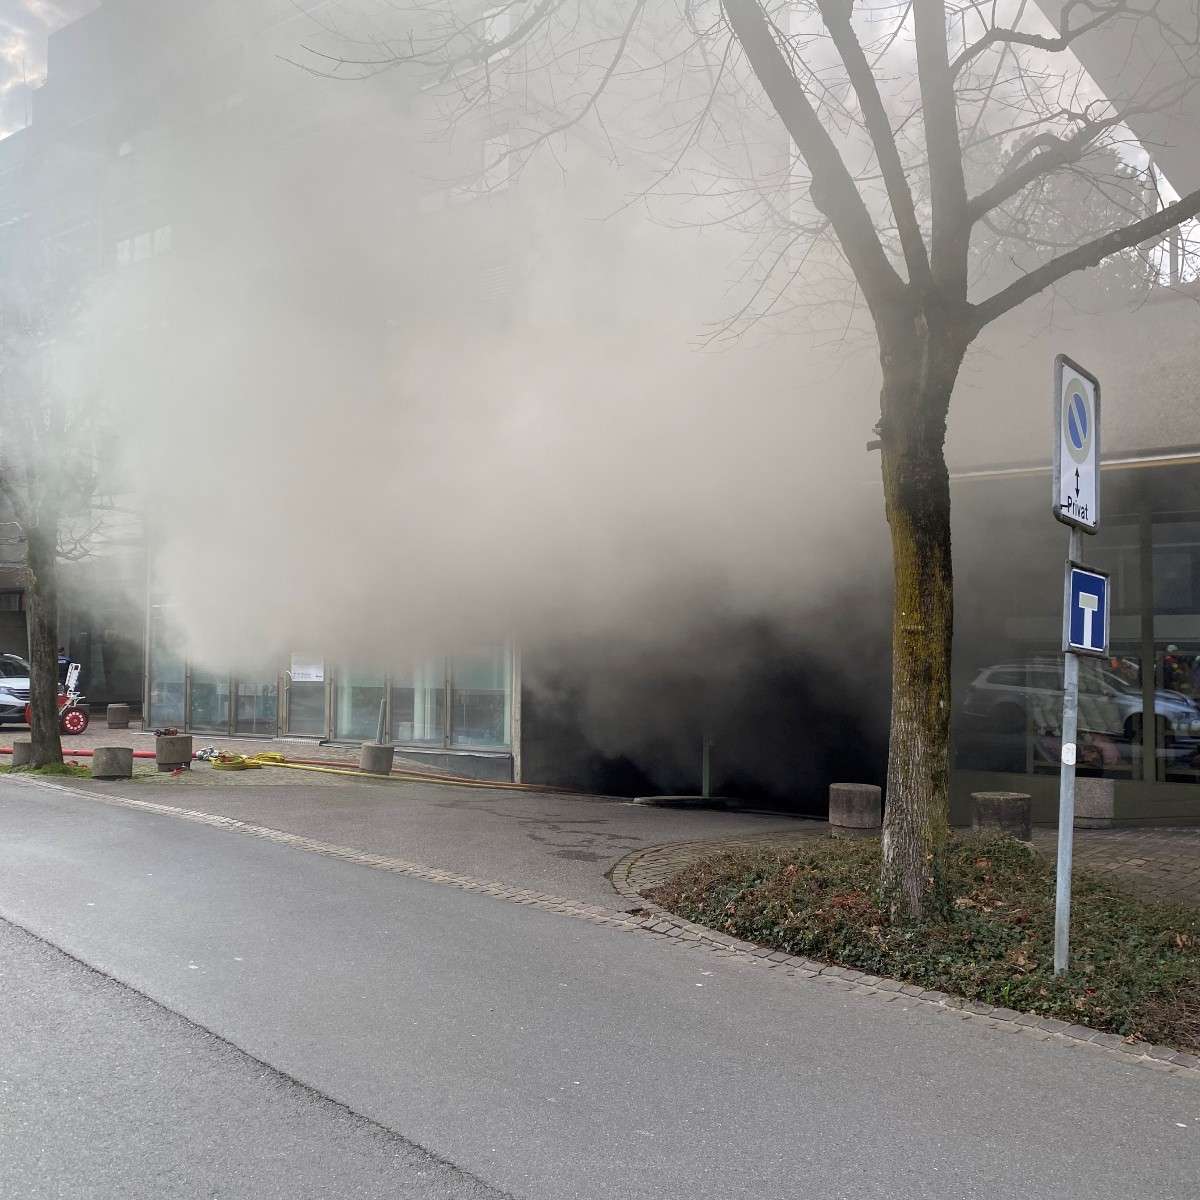 Update: Feuer in der Stadt Zug ist gelöscht